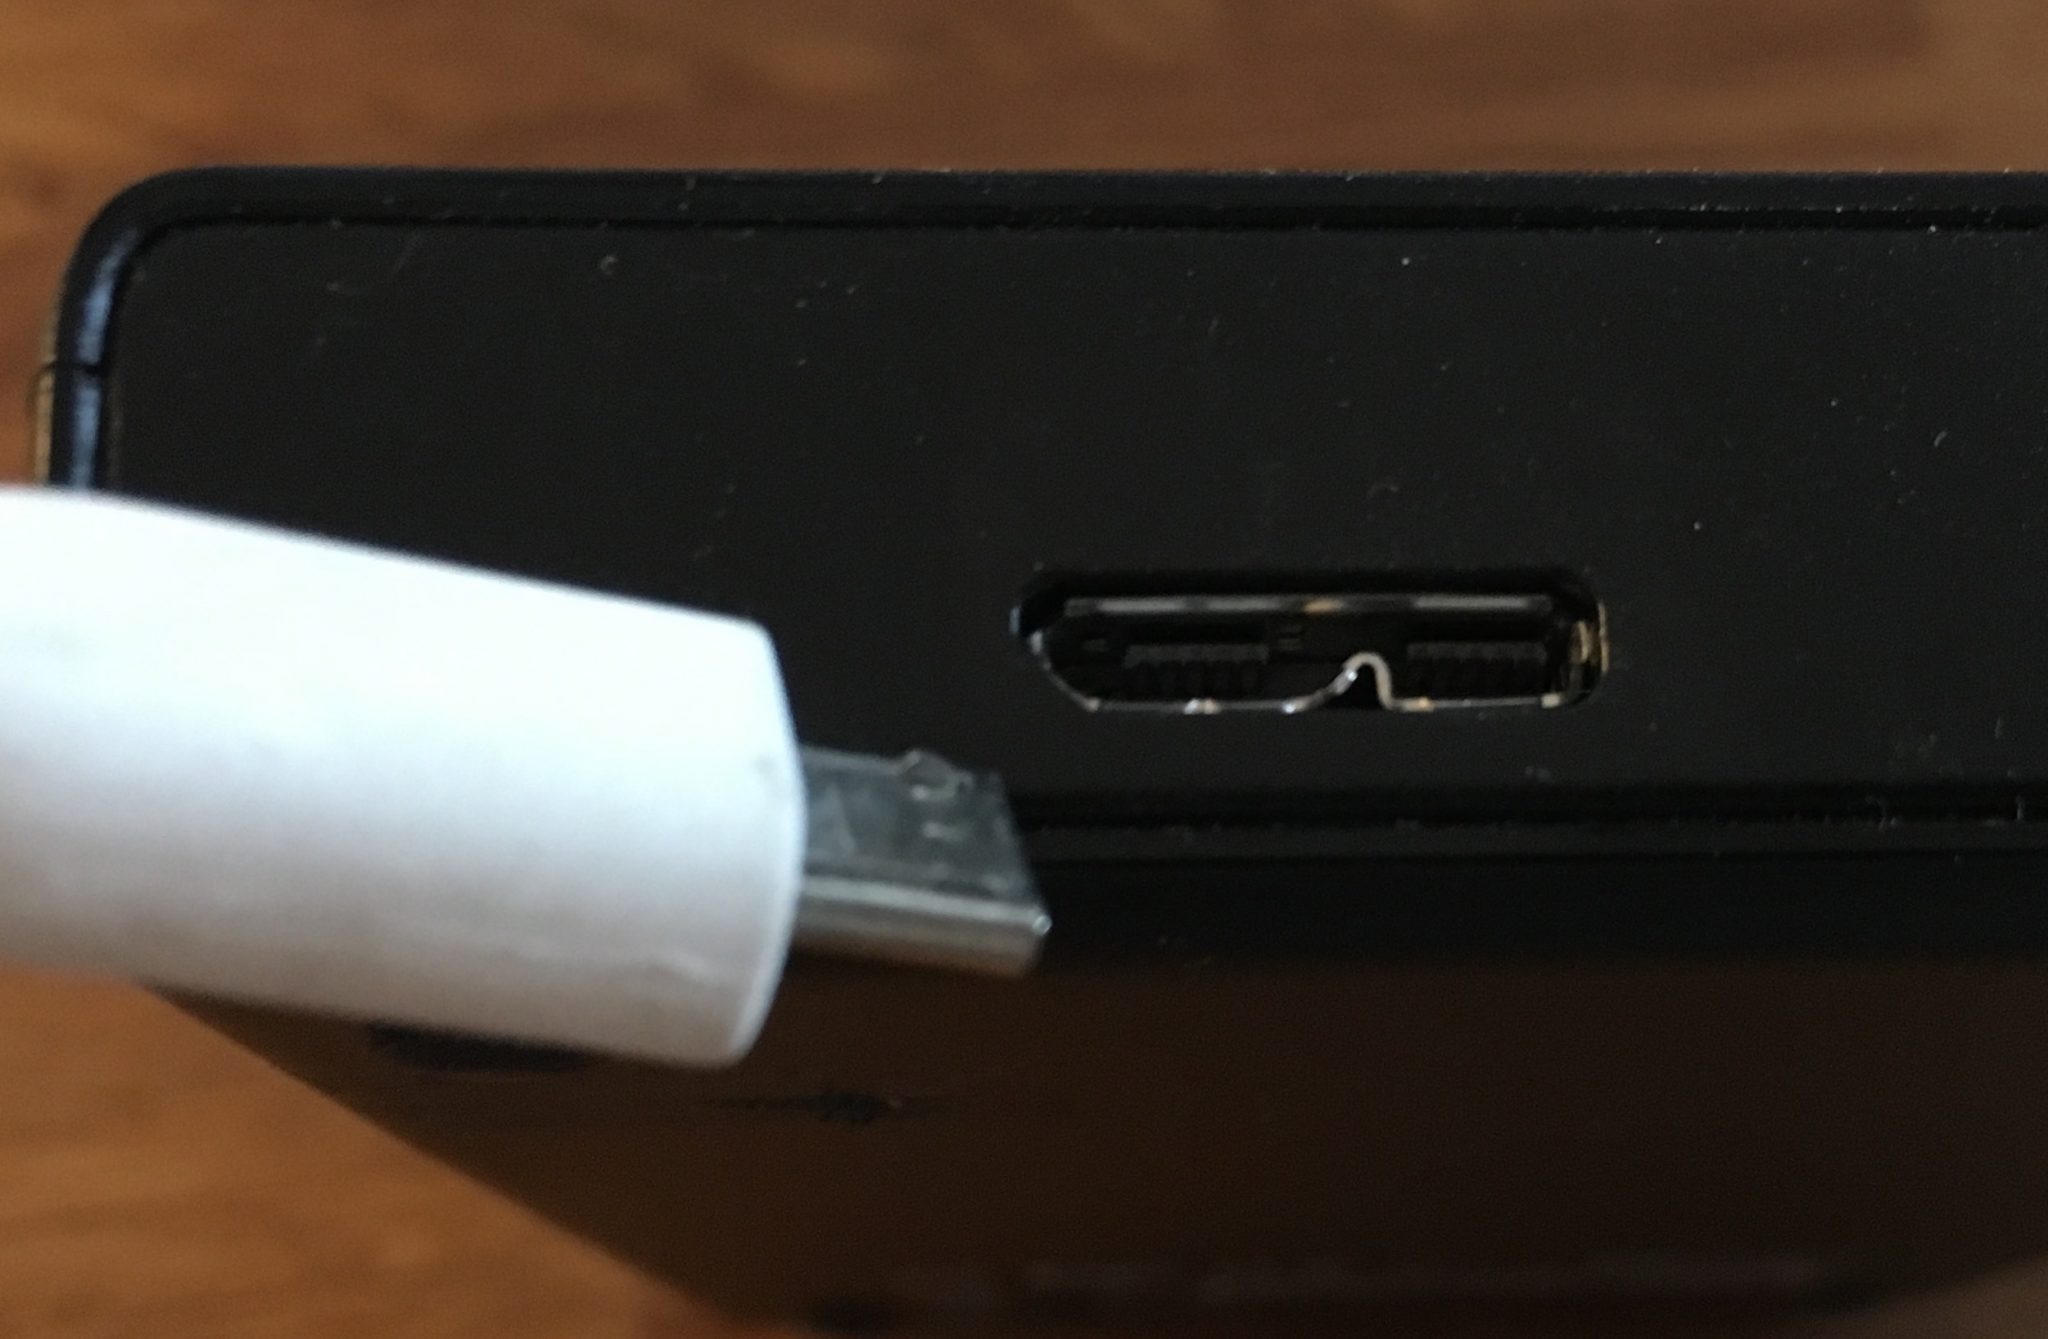 Kleiner Lifehack am Rande: Micro-USB-Kabel gehen auch an den breiten Anschlüssen. Nur halt mit USB-2.0-Geschwindigkeit.